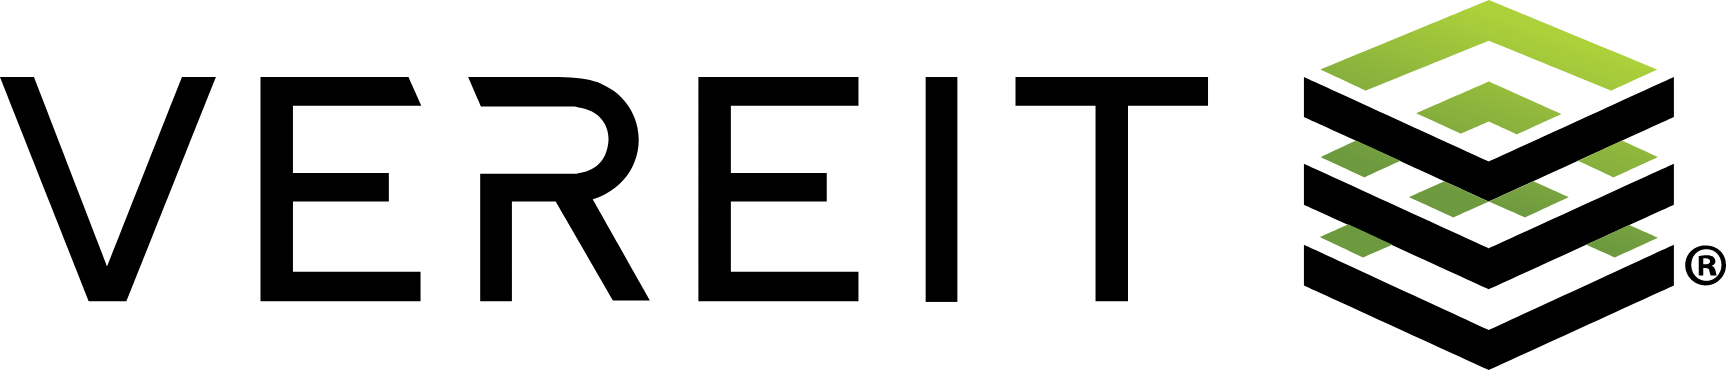 VEREIT logo large (transparent PNG)